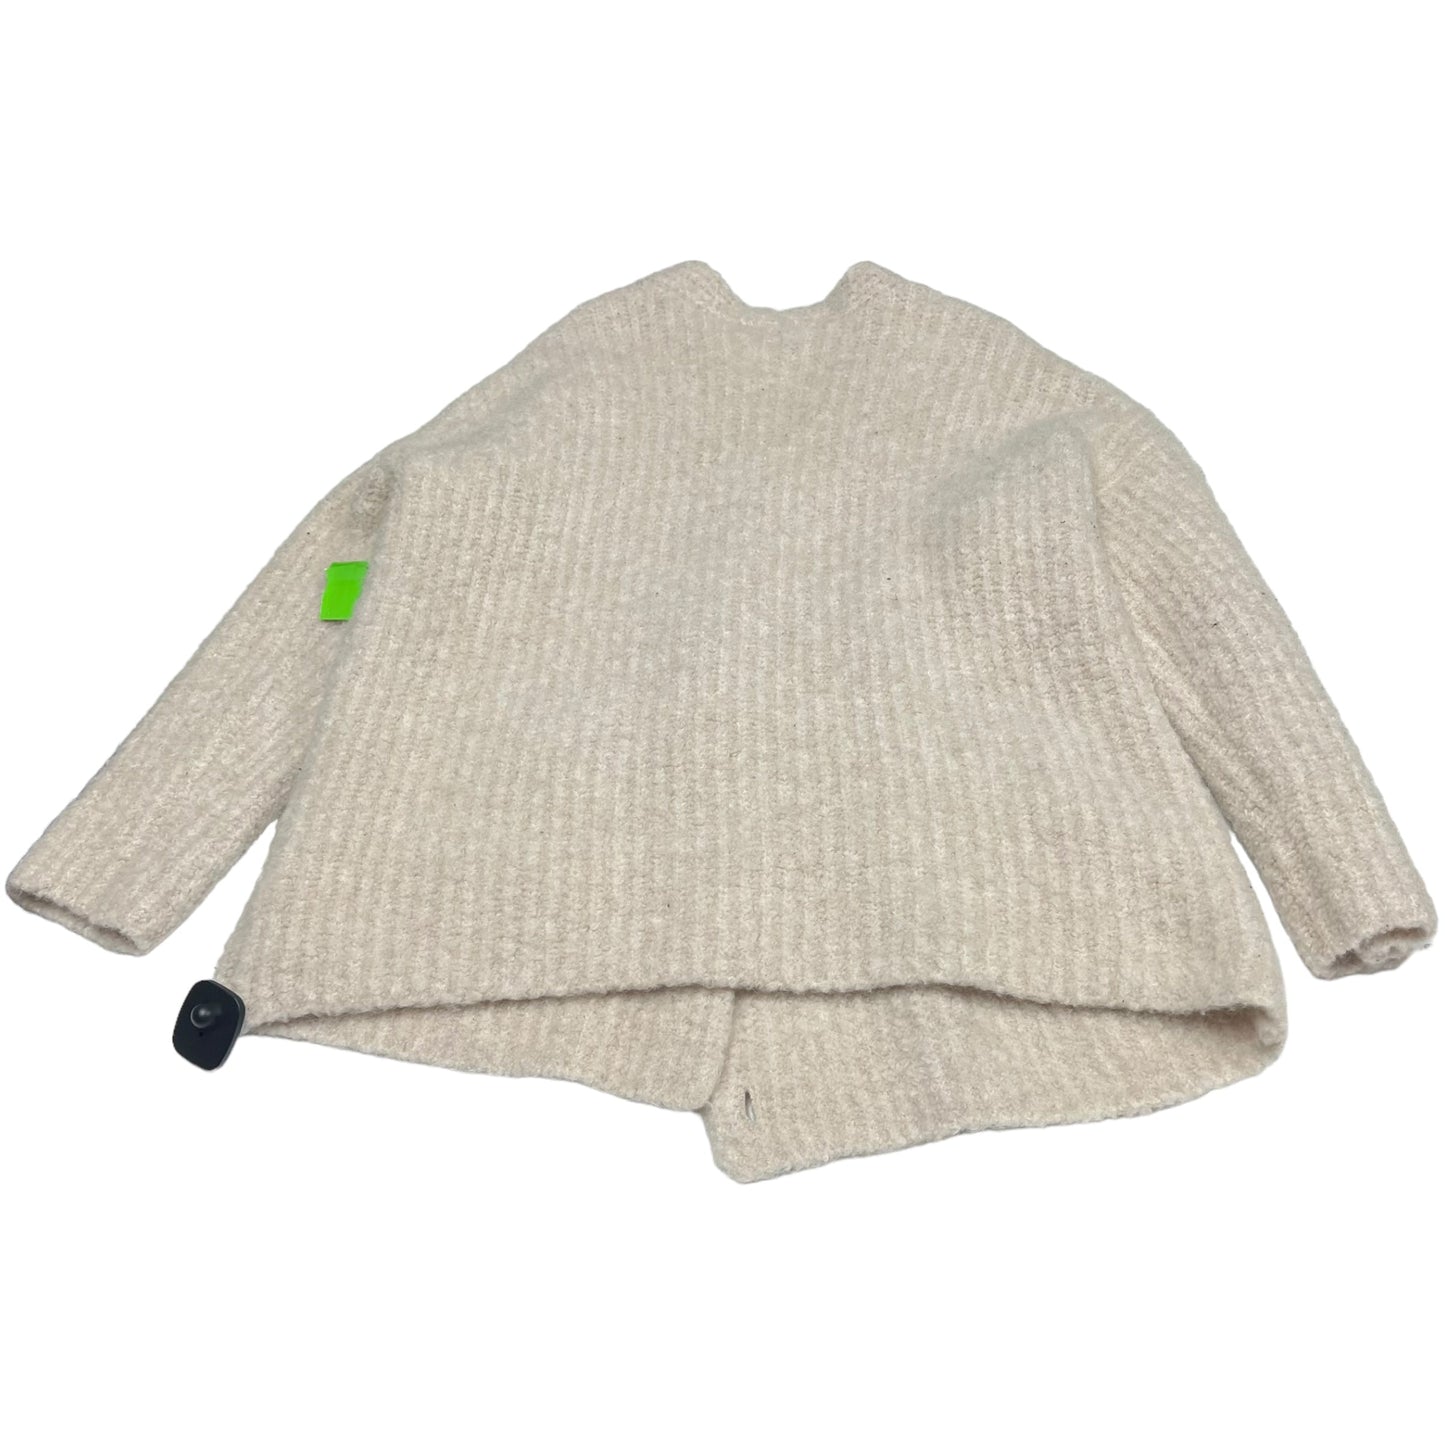 Sweater Cardigan By Karen Kane  Size: 1x